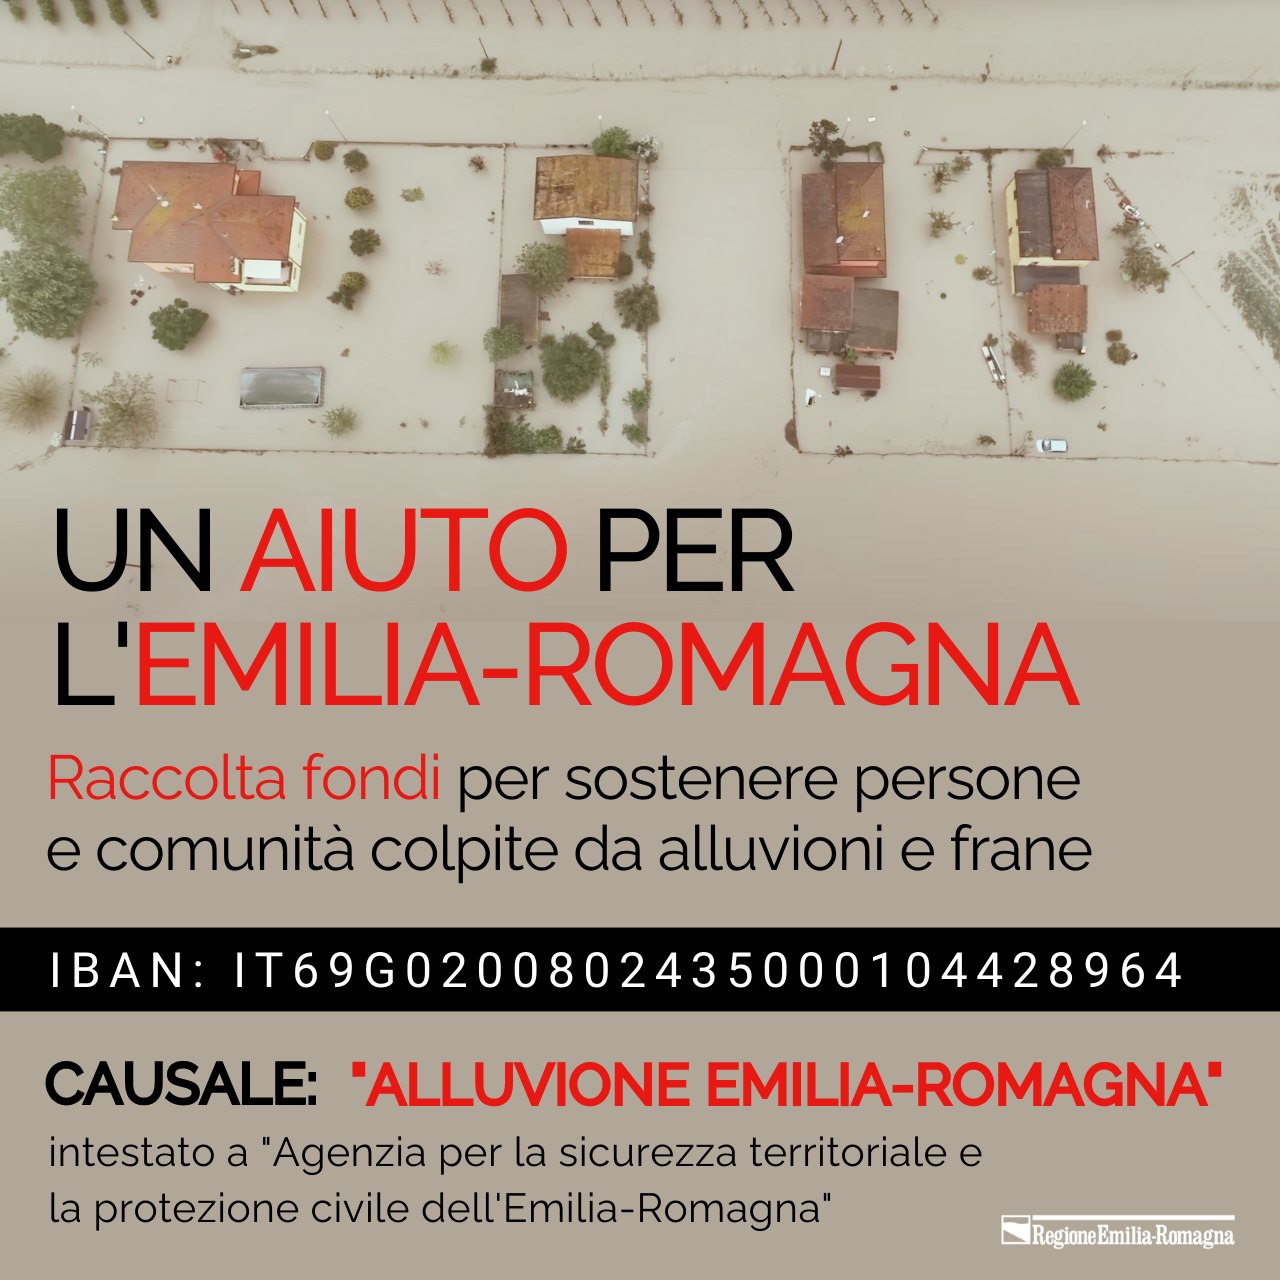 SOLIDARIETÀ | A sostegno delle popolazioni colpite dalle alluvioni in Emilia Romagna